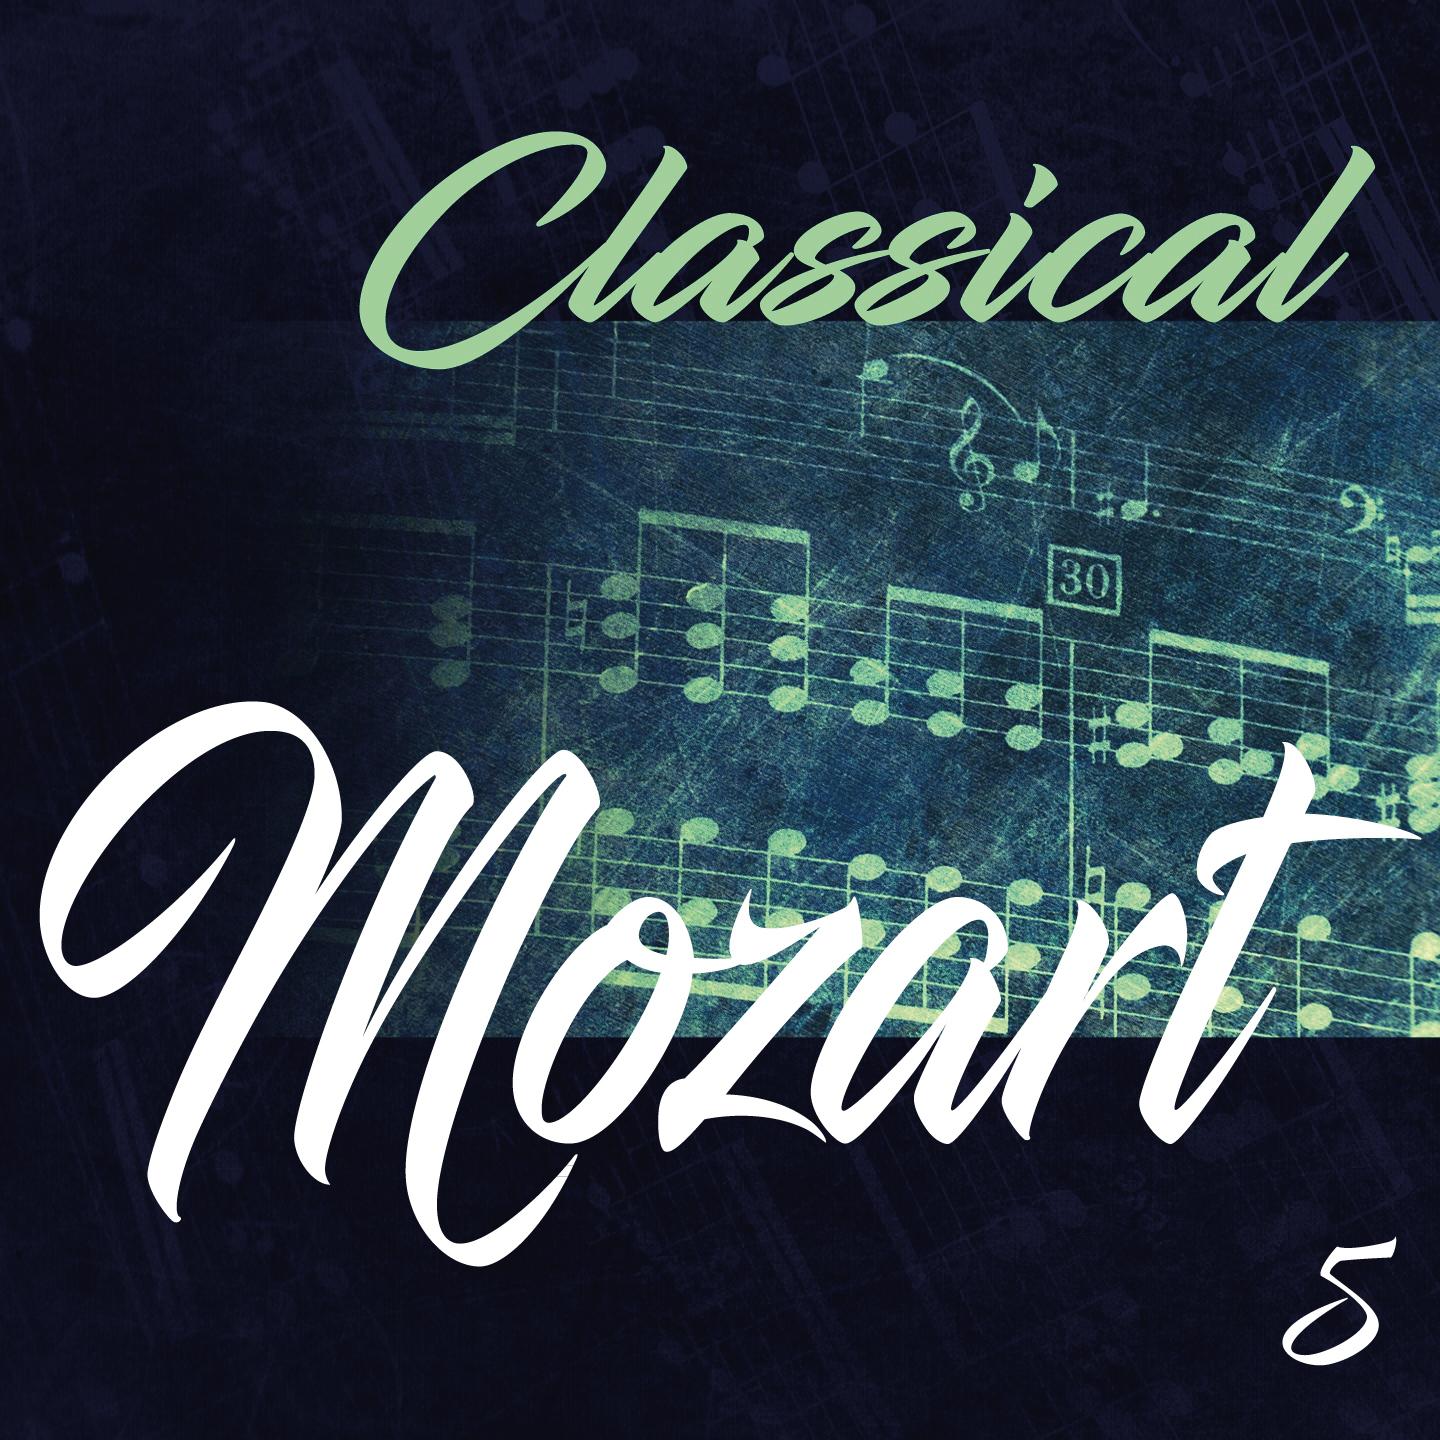 Classical Mozart 5